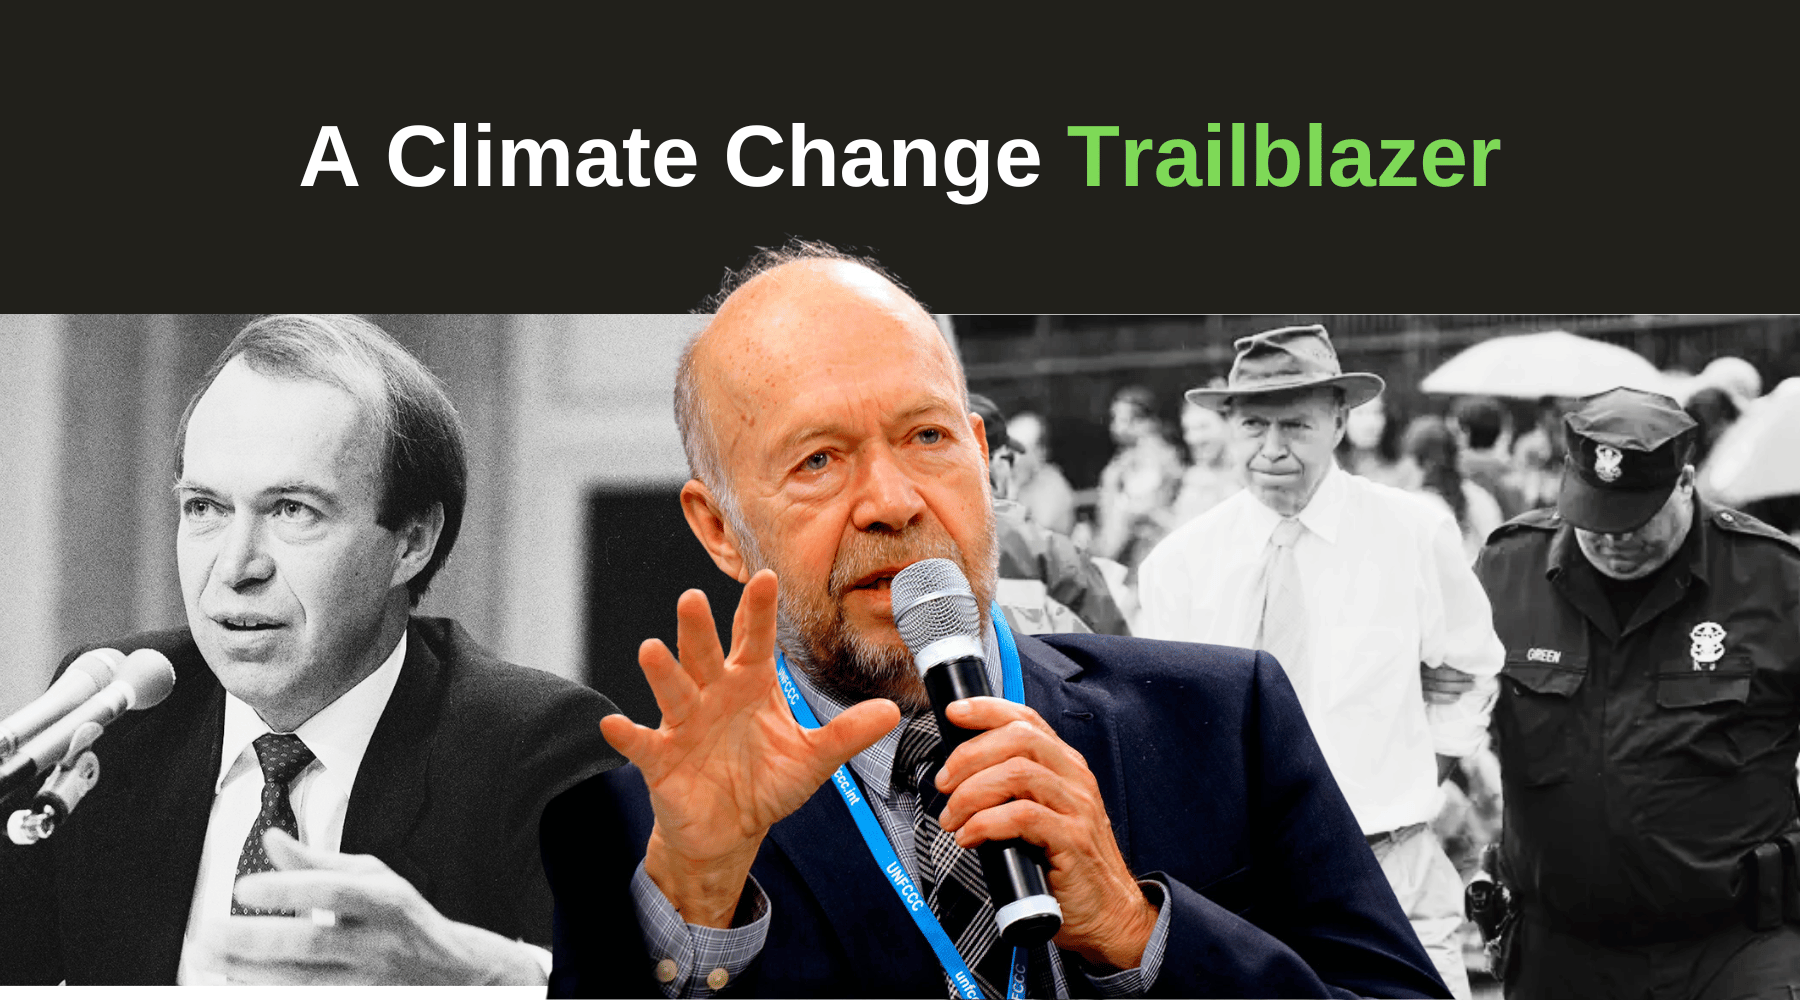 James Hansen: A Climate Change Trailblazer